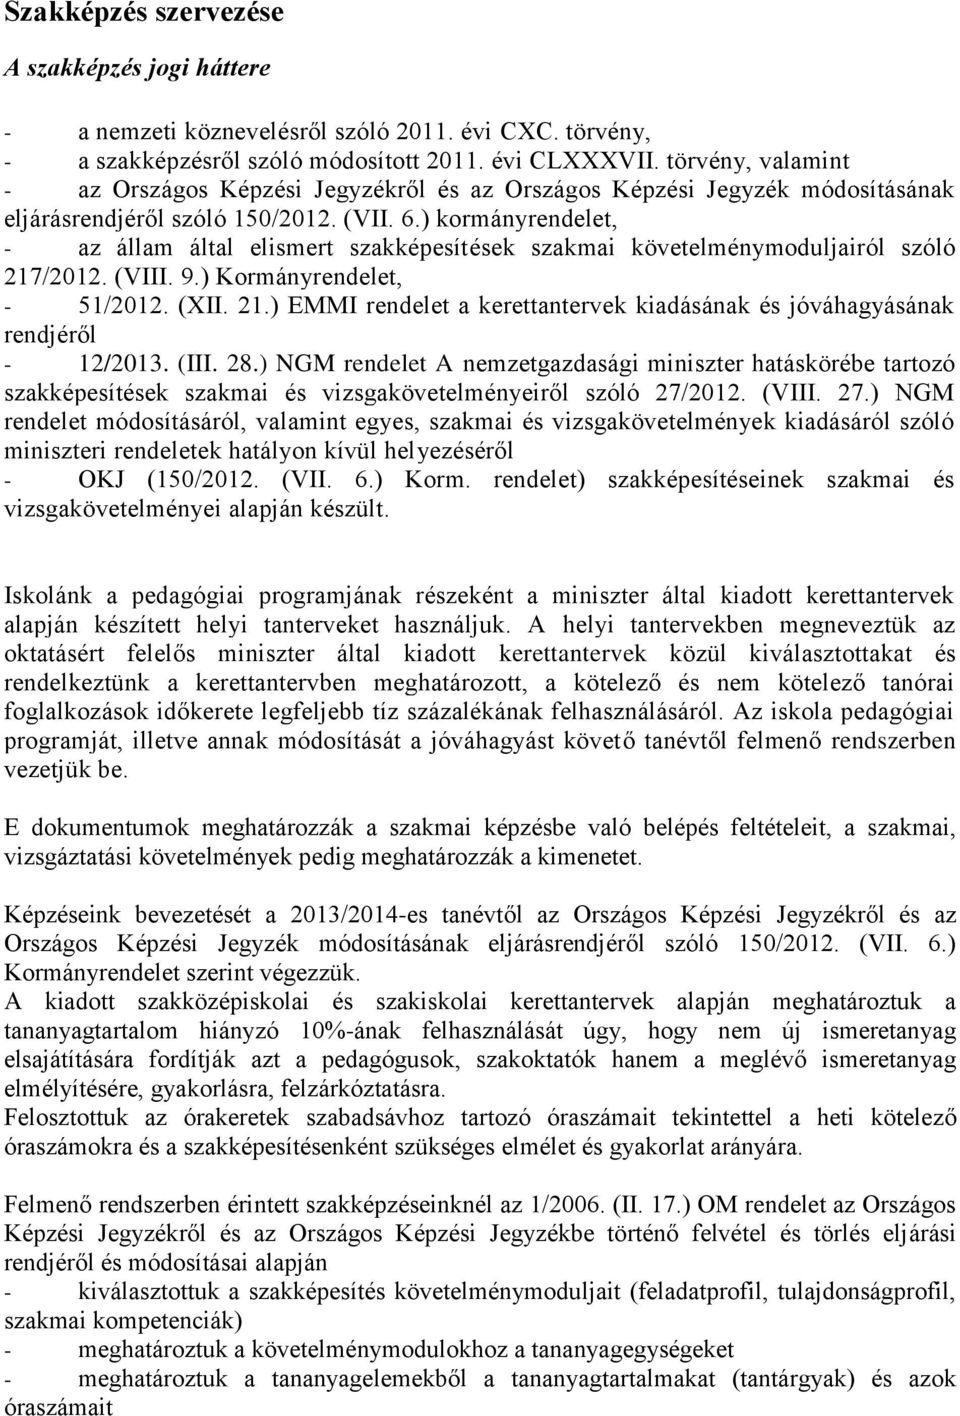 ) kormányrendelet, - az állam által elismert szakképesítések szakmai követelménymoduljairól szóló 217/2012. (VIII. 9.) Kormányrendelet, - 51/2012. (XII. 21.) EMMI rendelet a kerettantervek kiadásának és jóváhagyásának rendjéről - 12/2013.